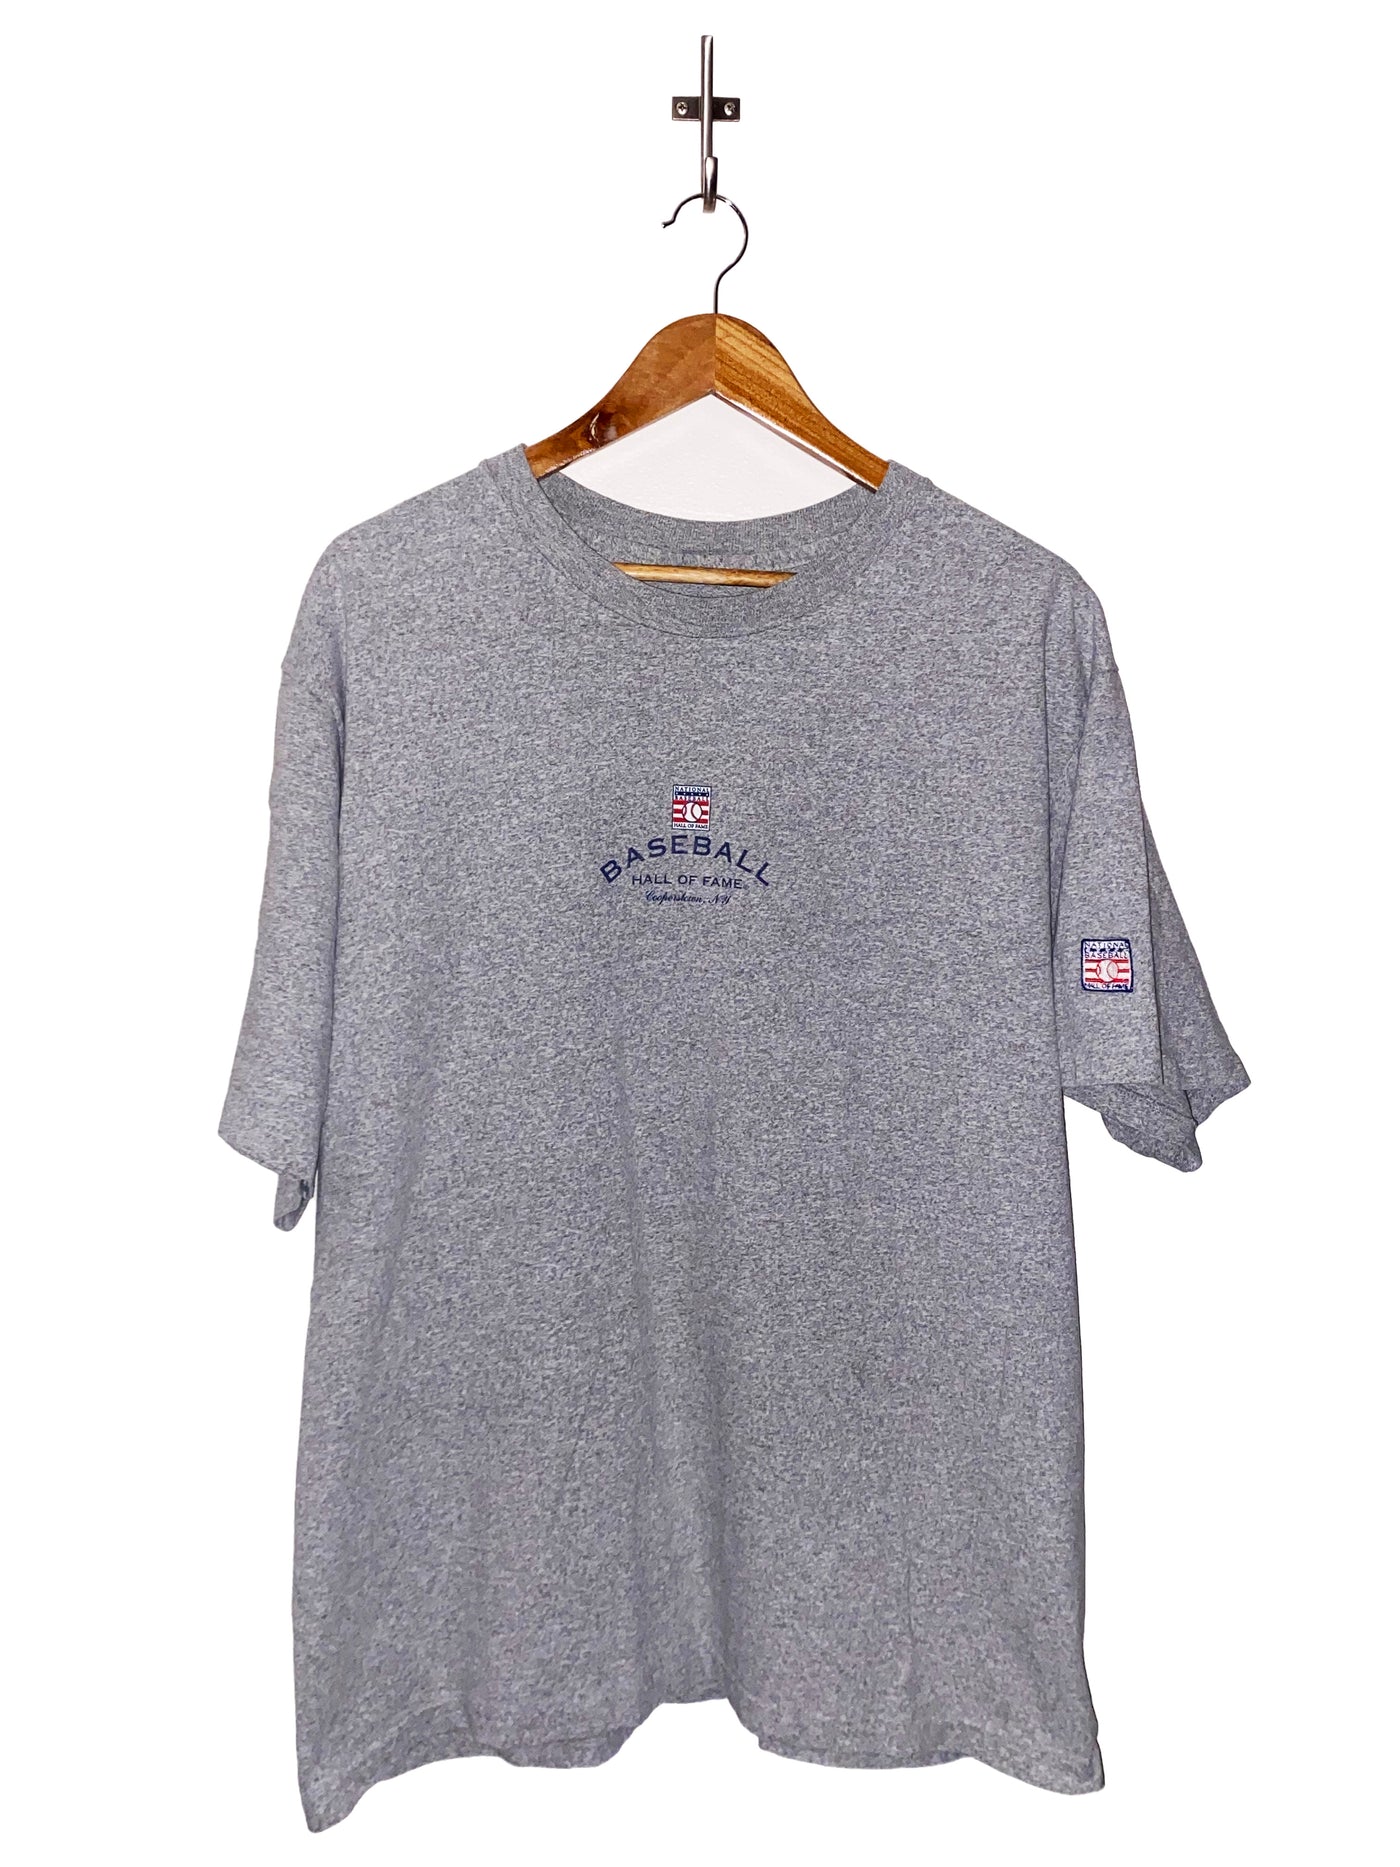 Vintage 90s Baseball Hall of Fame T-Shirt